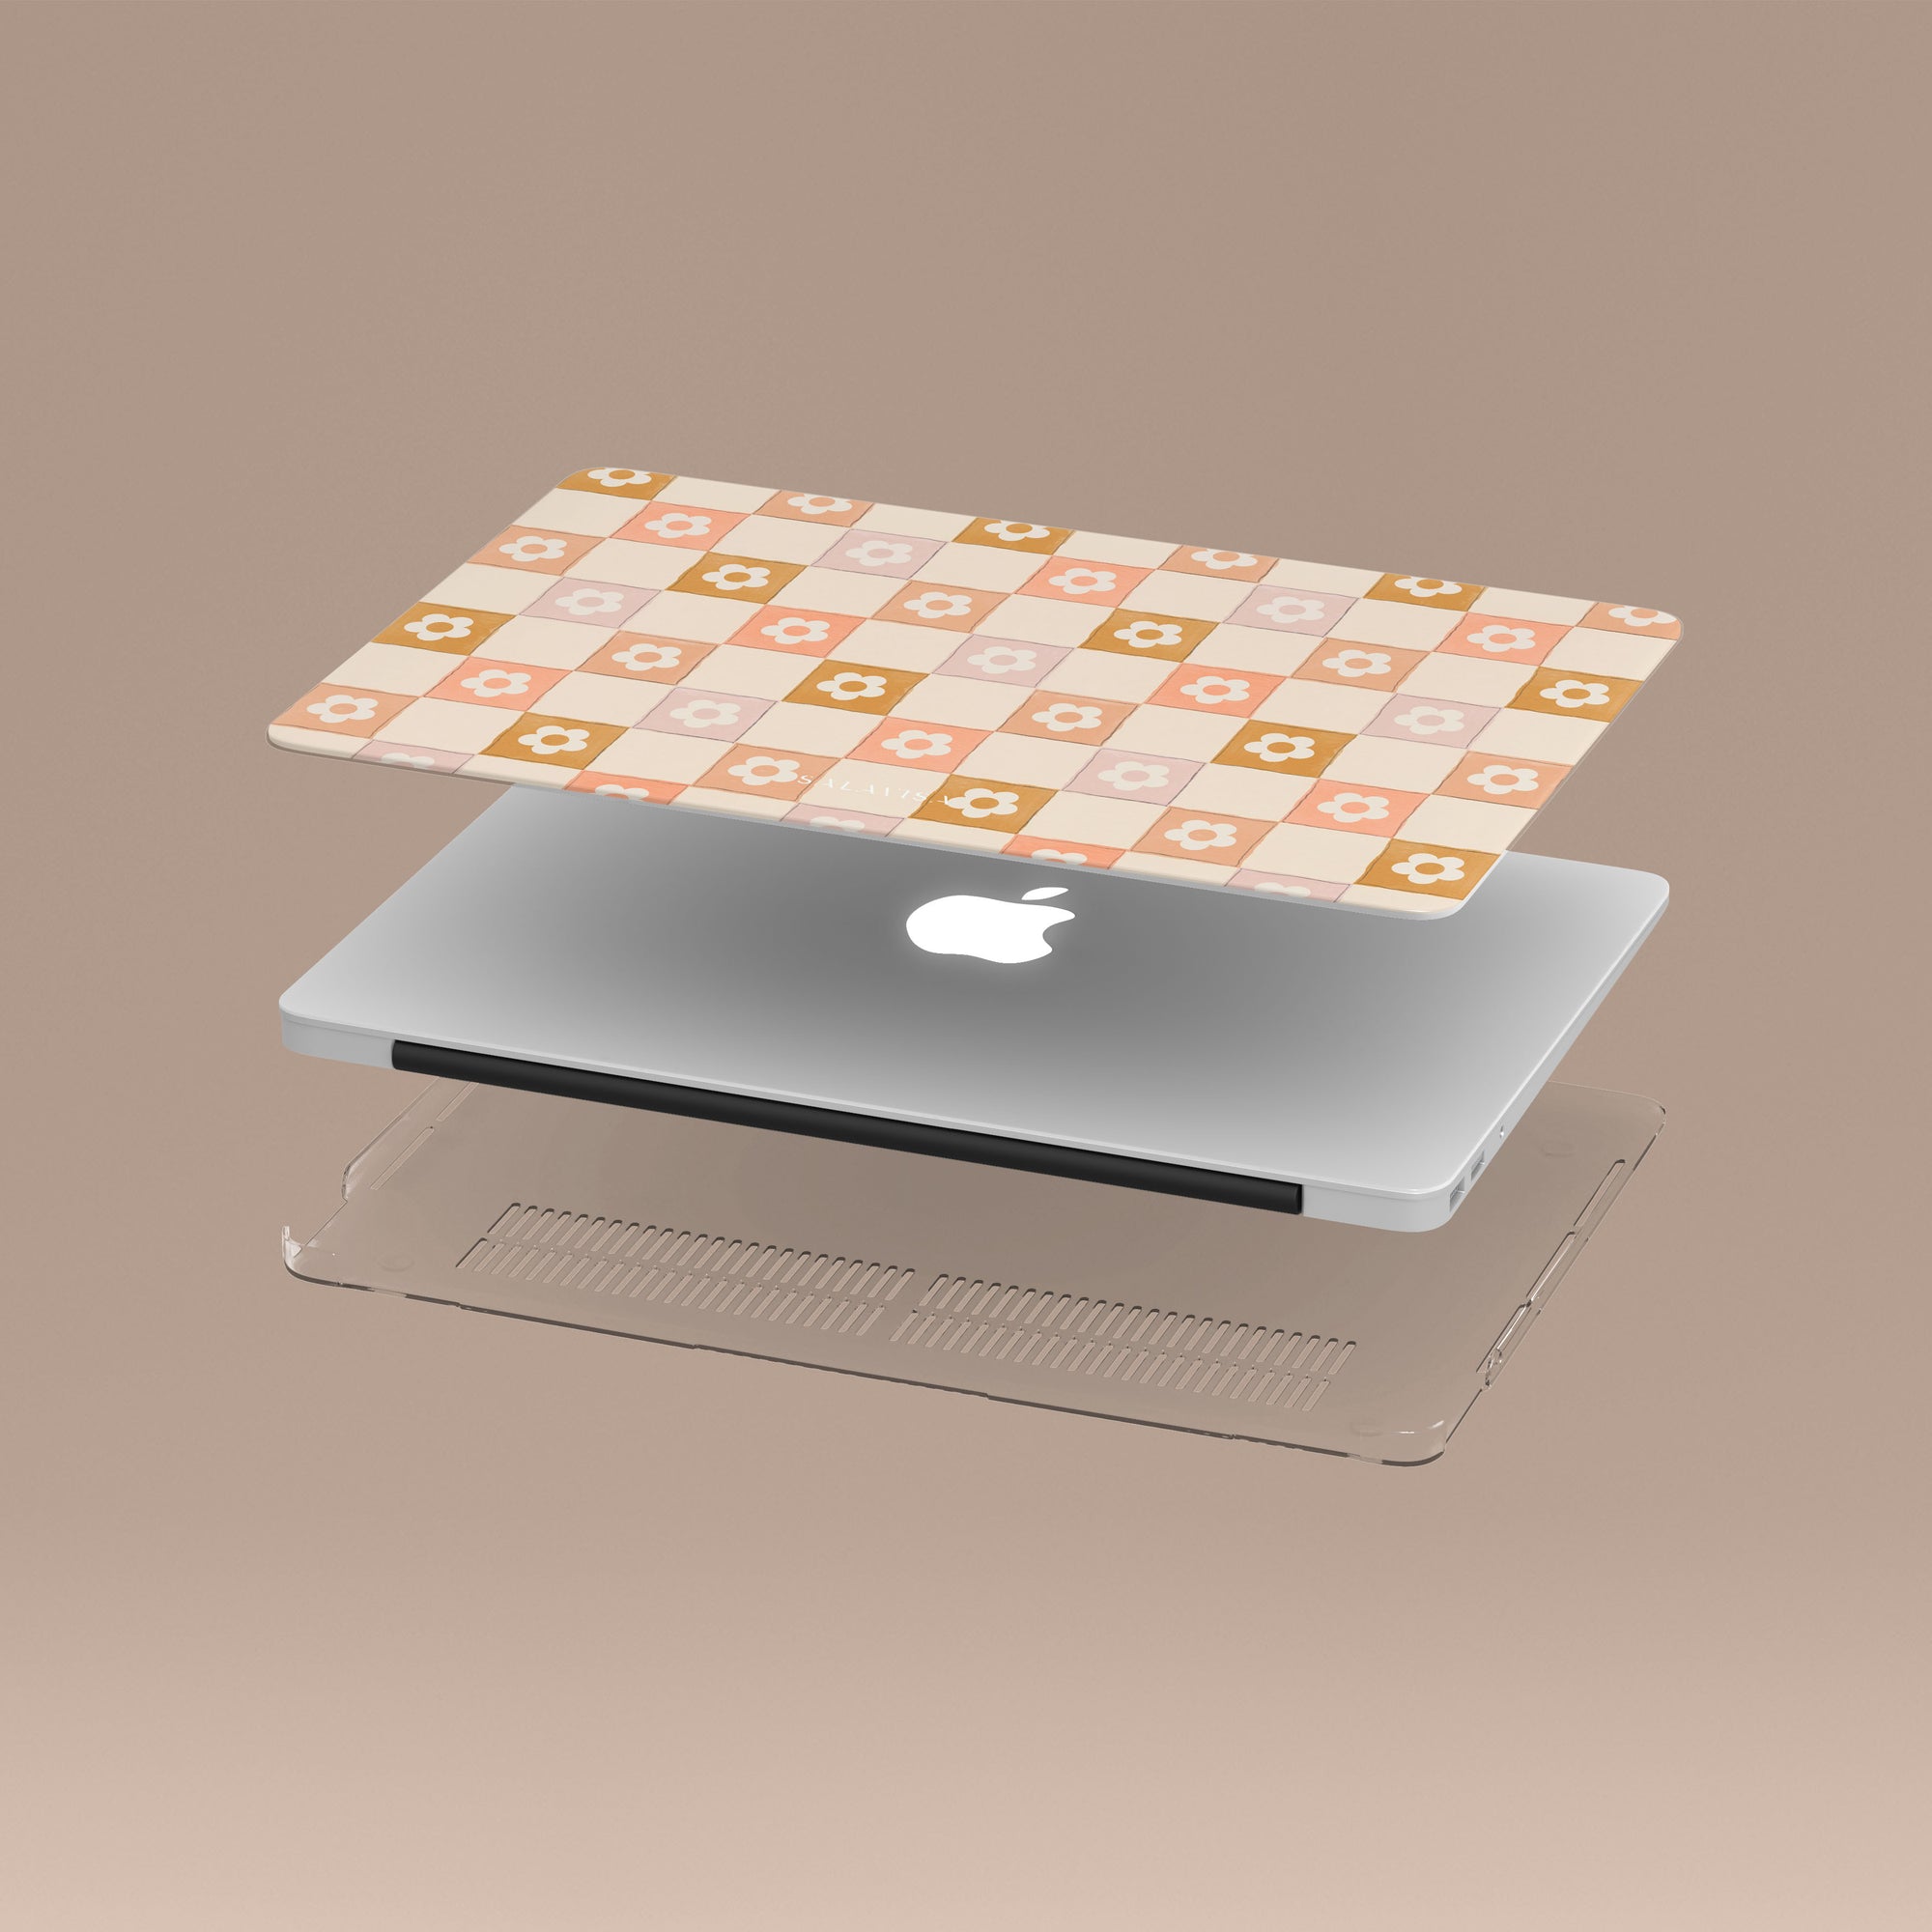 Beige Splendor MacBook Case MacBook Cases - SALAVISA